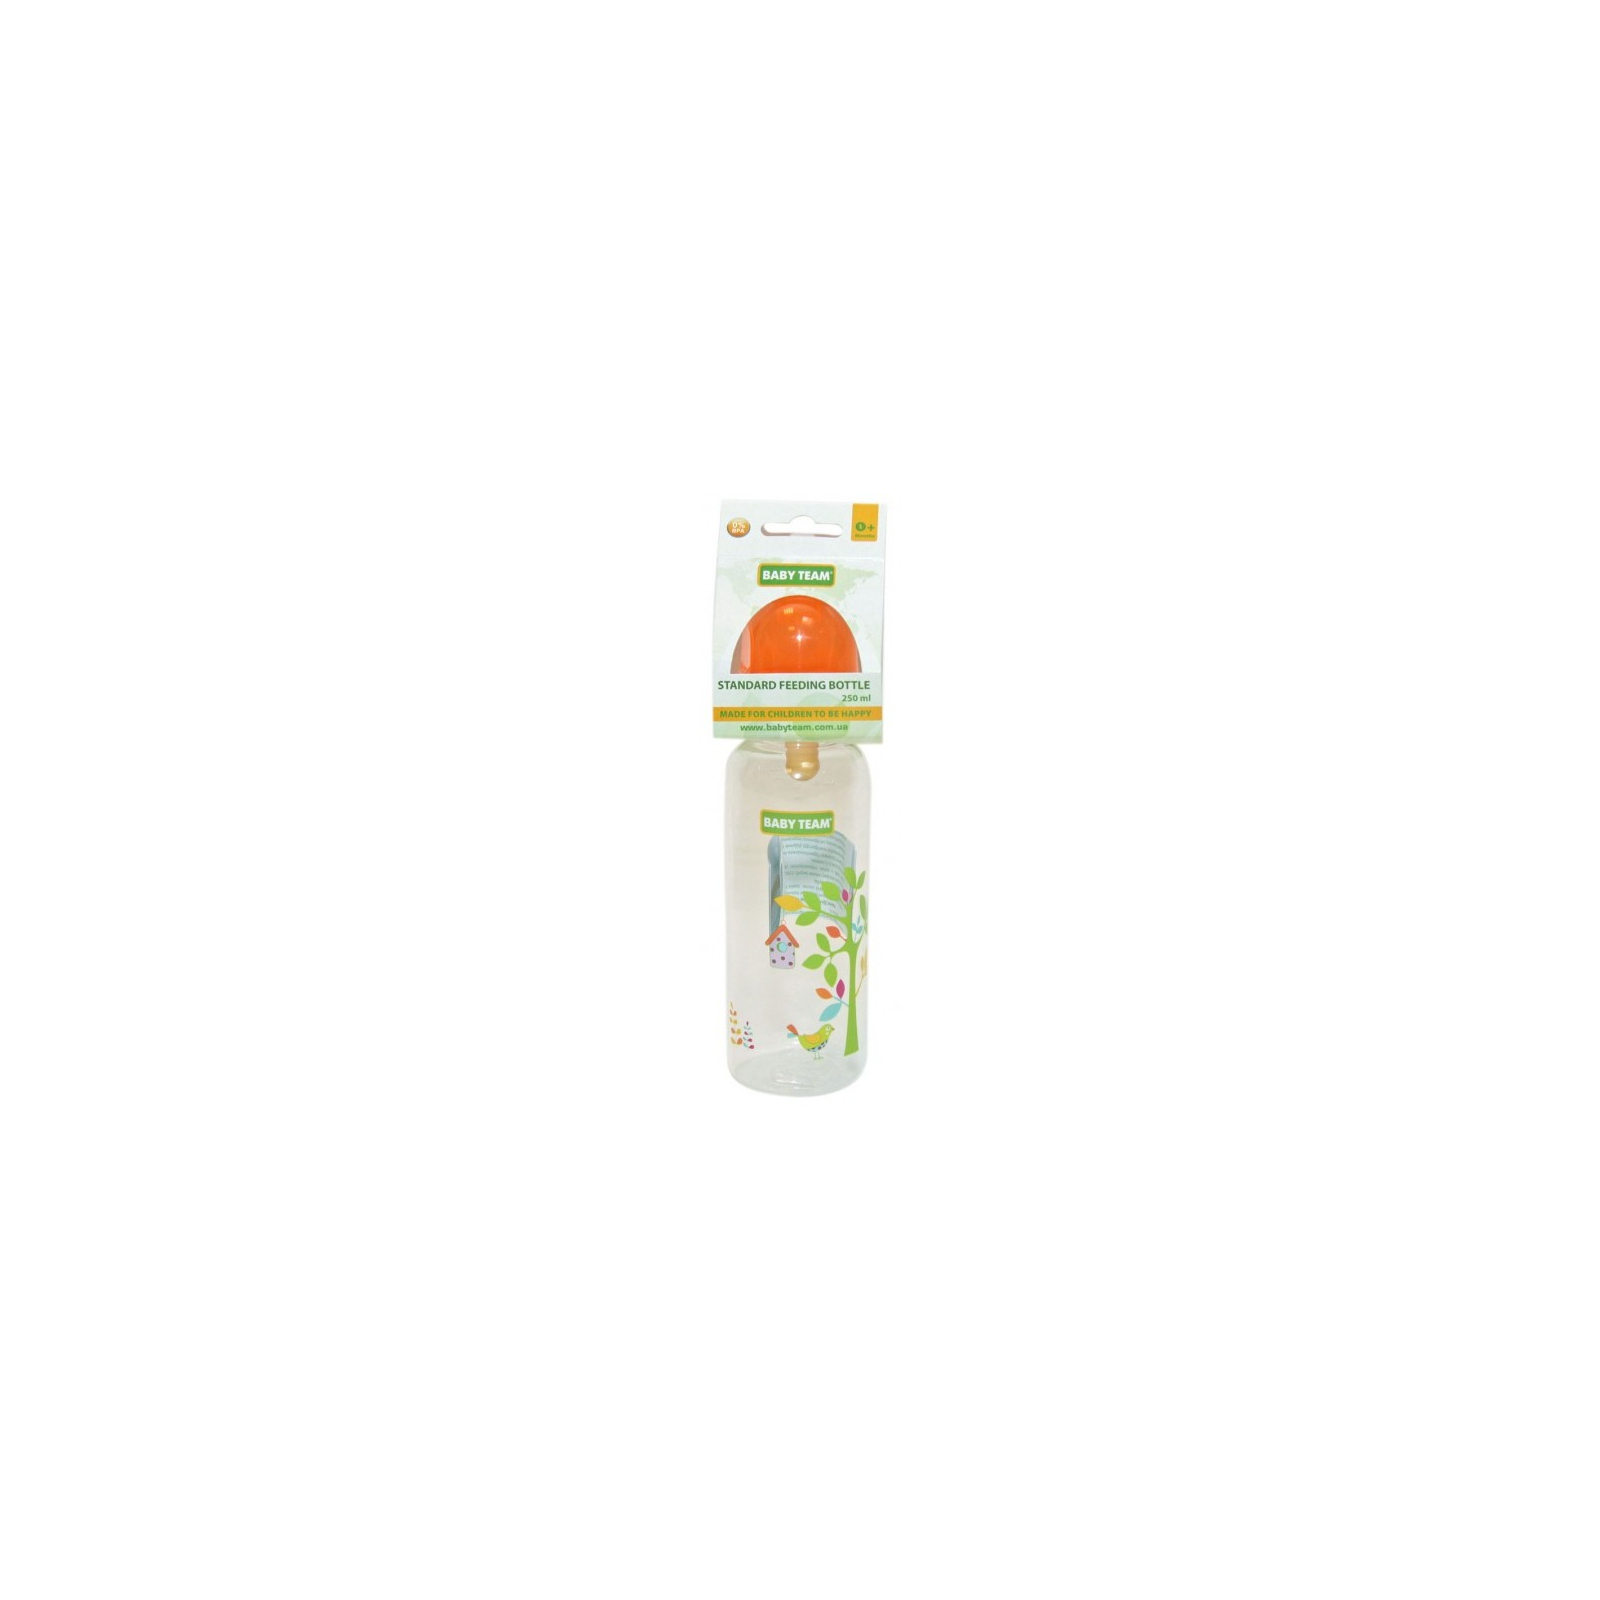 Бутылочка для кормления Baby Team с латексной соской, 250 мл 0+ салат (1310_салатовый)